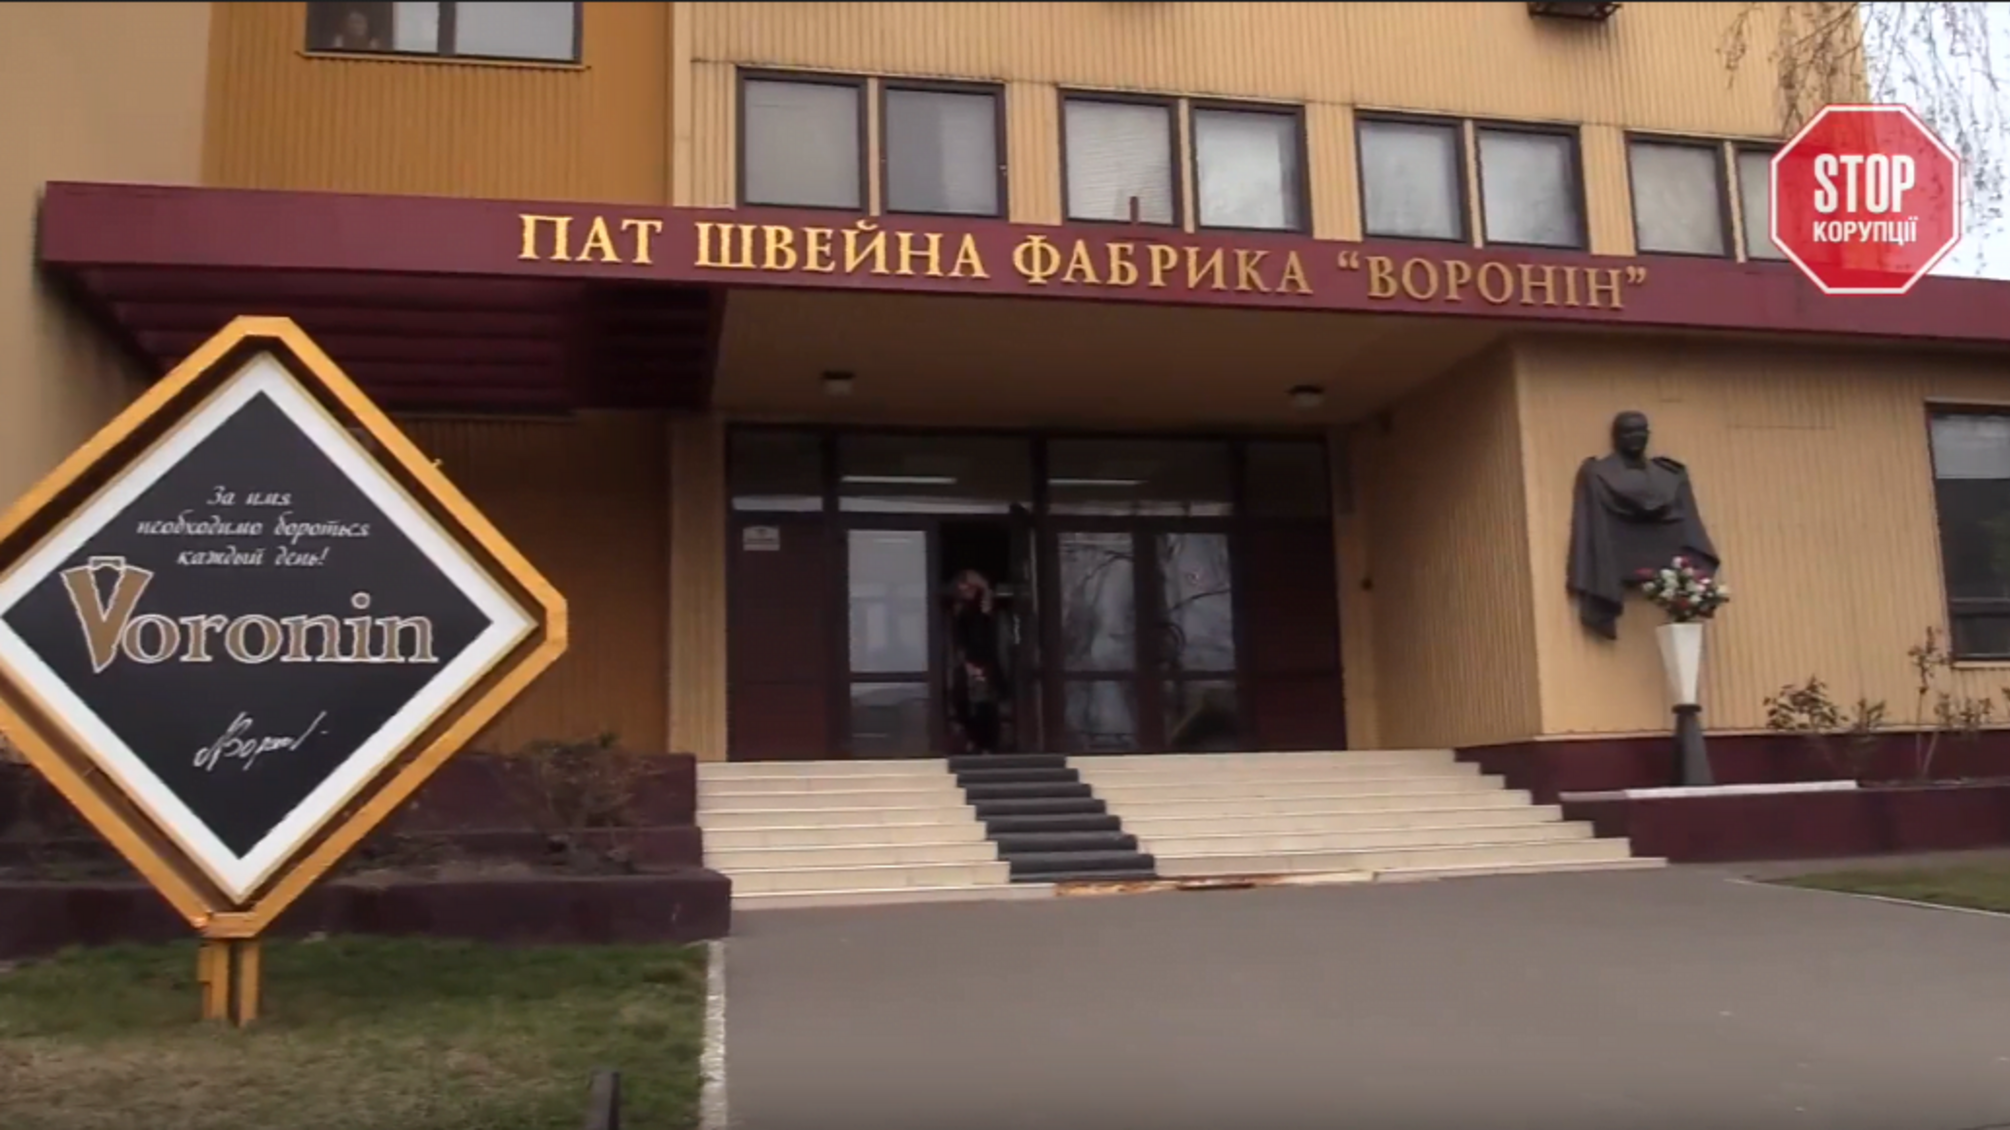 Після звернення 'СтопКору' на захист фабрики 'Воронін' виступили народні депутати